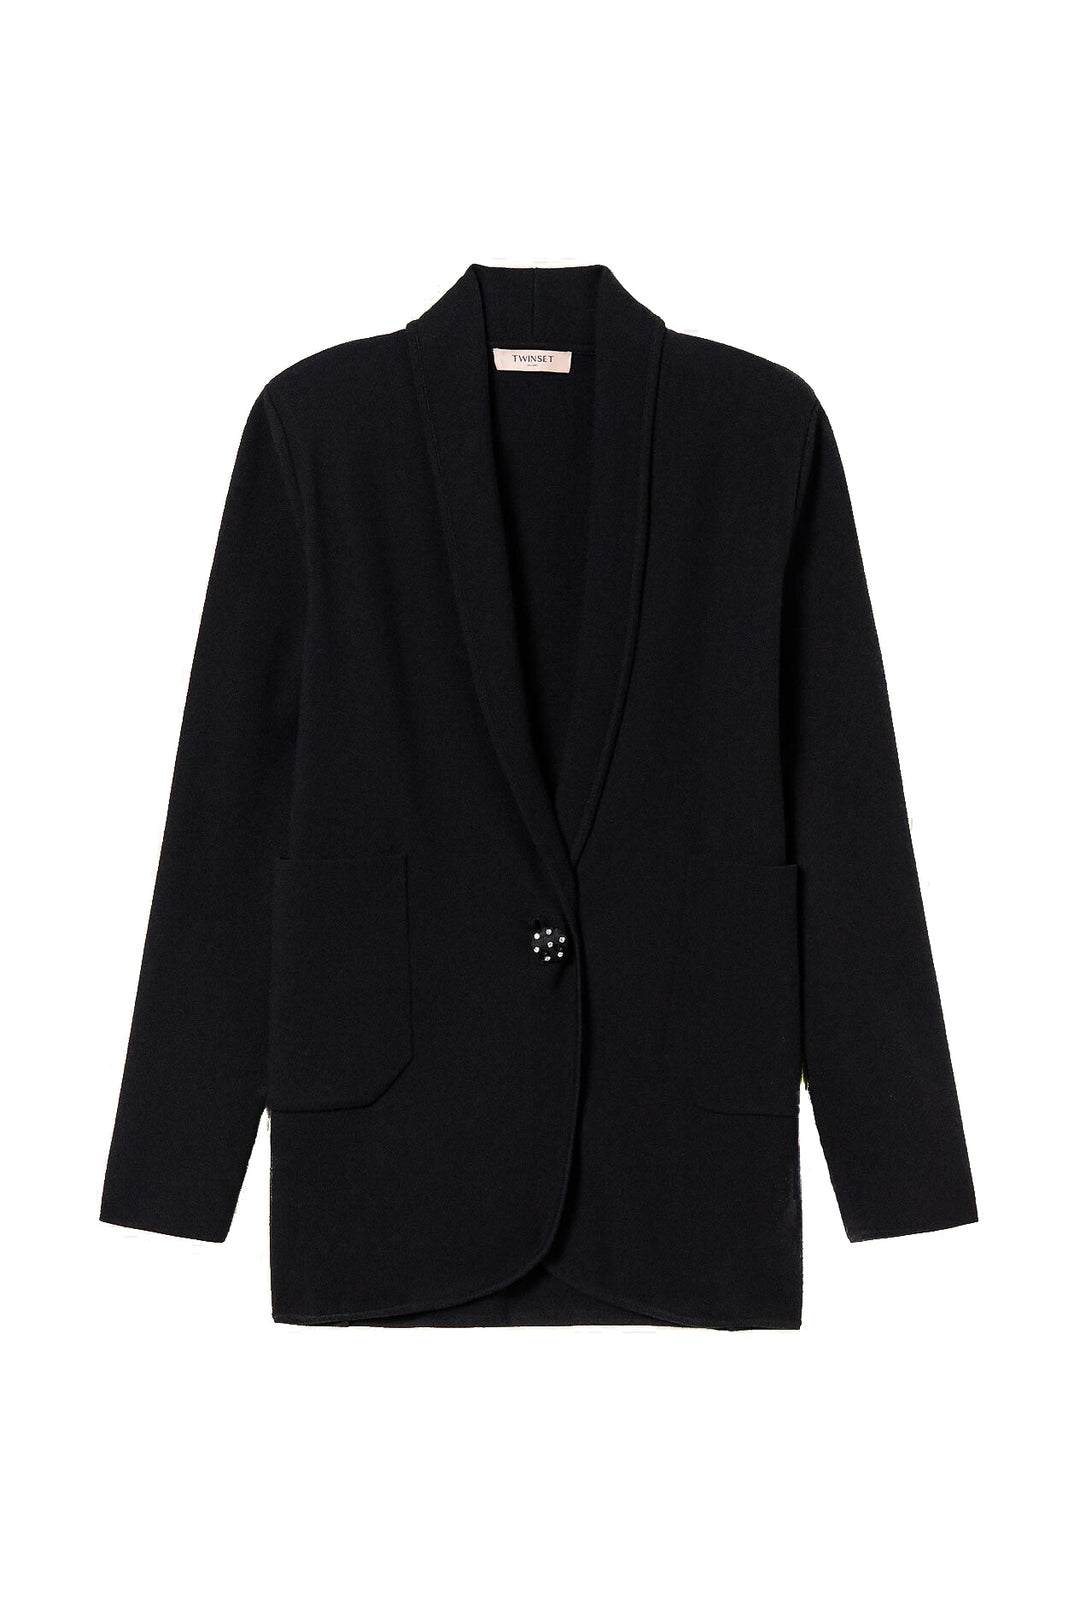 TWINSET Giacca blazer nera in maglia con bottone gioiello - Mancinelli 1954